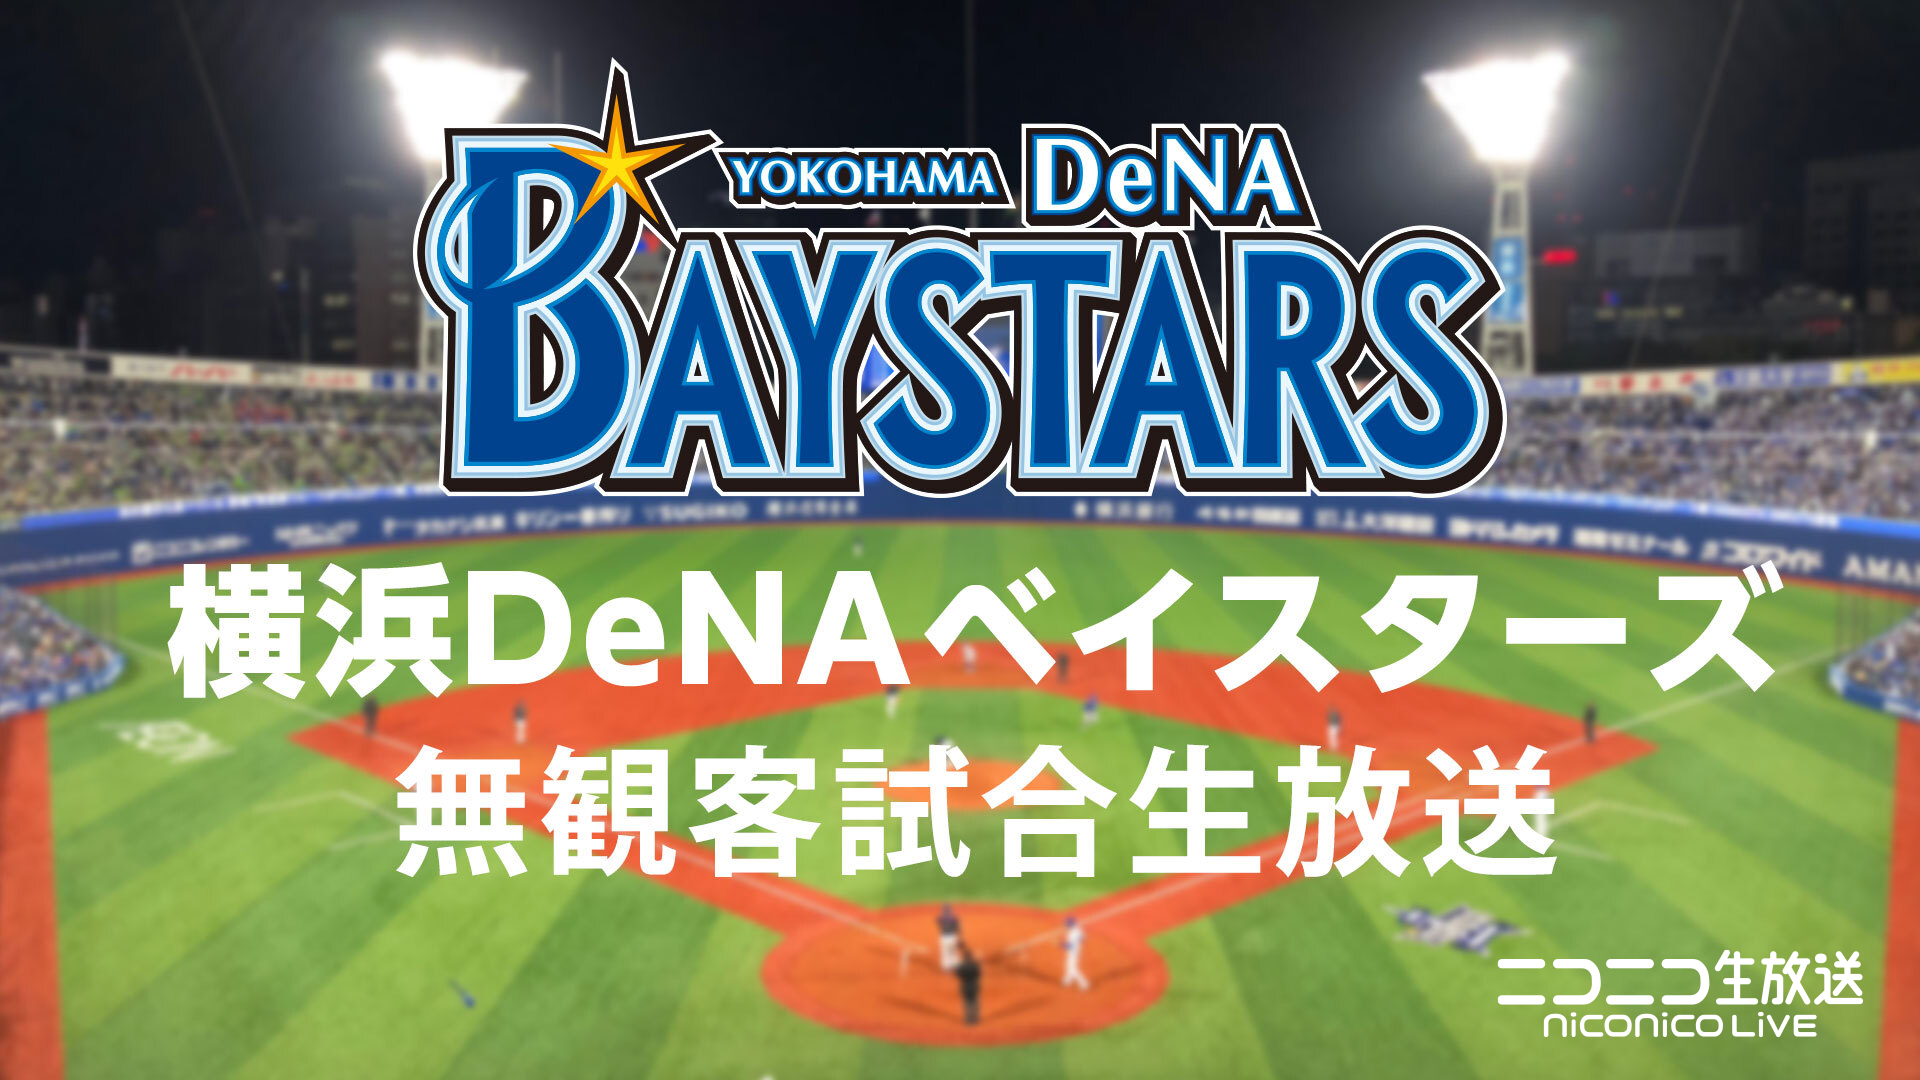 横浜denaベイスターズ 練習試合を6月2日よりニコニコ生放送で生中継